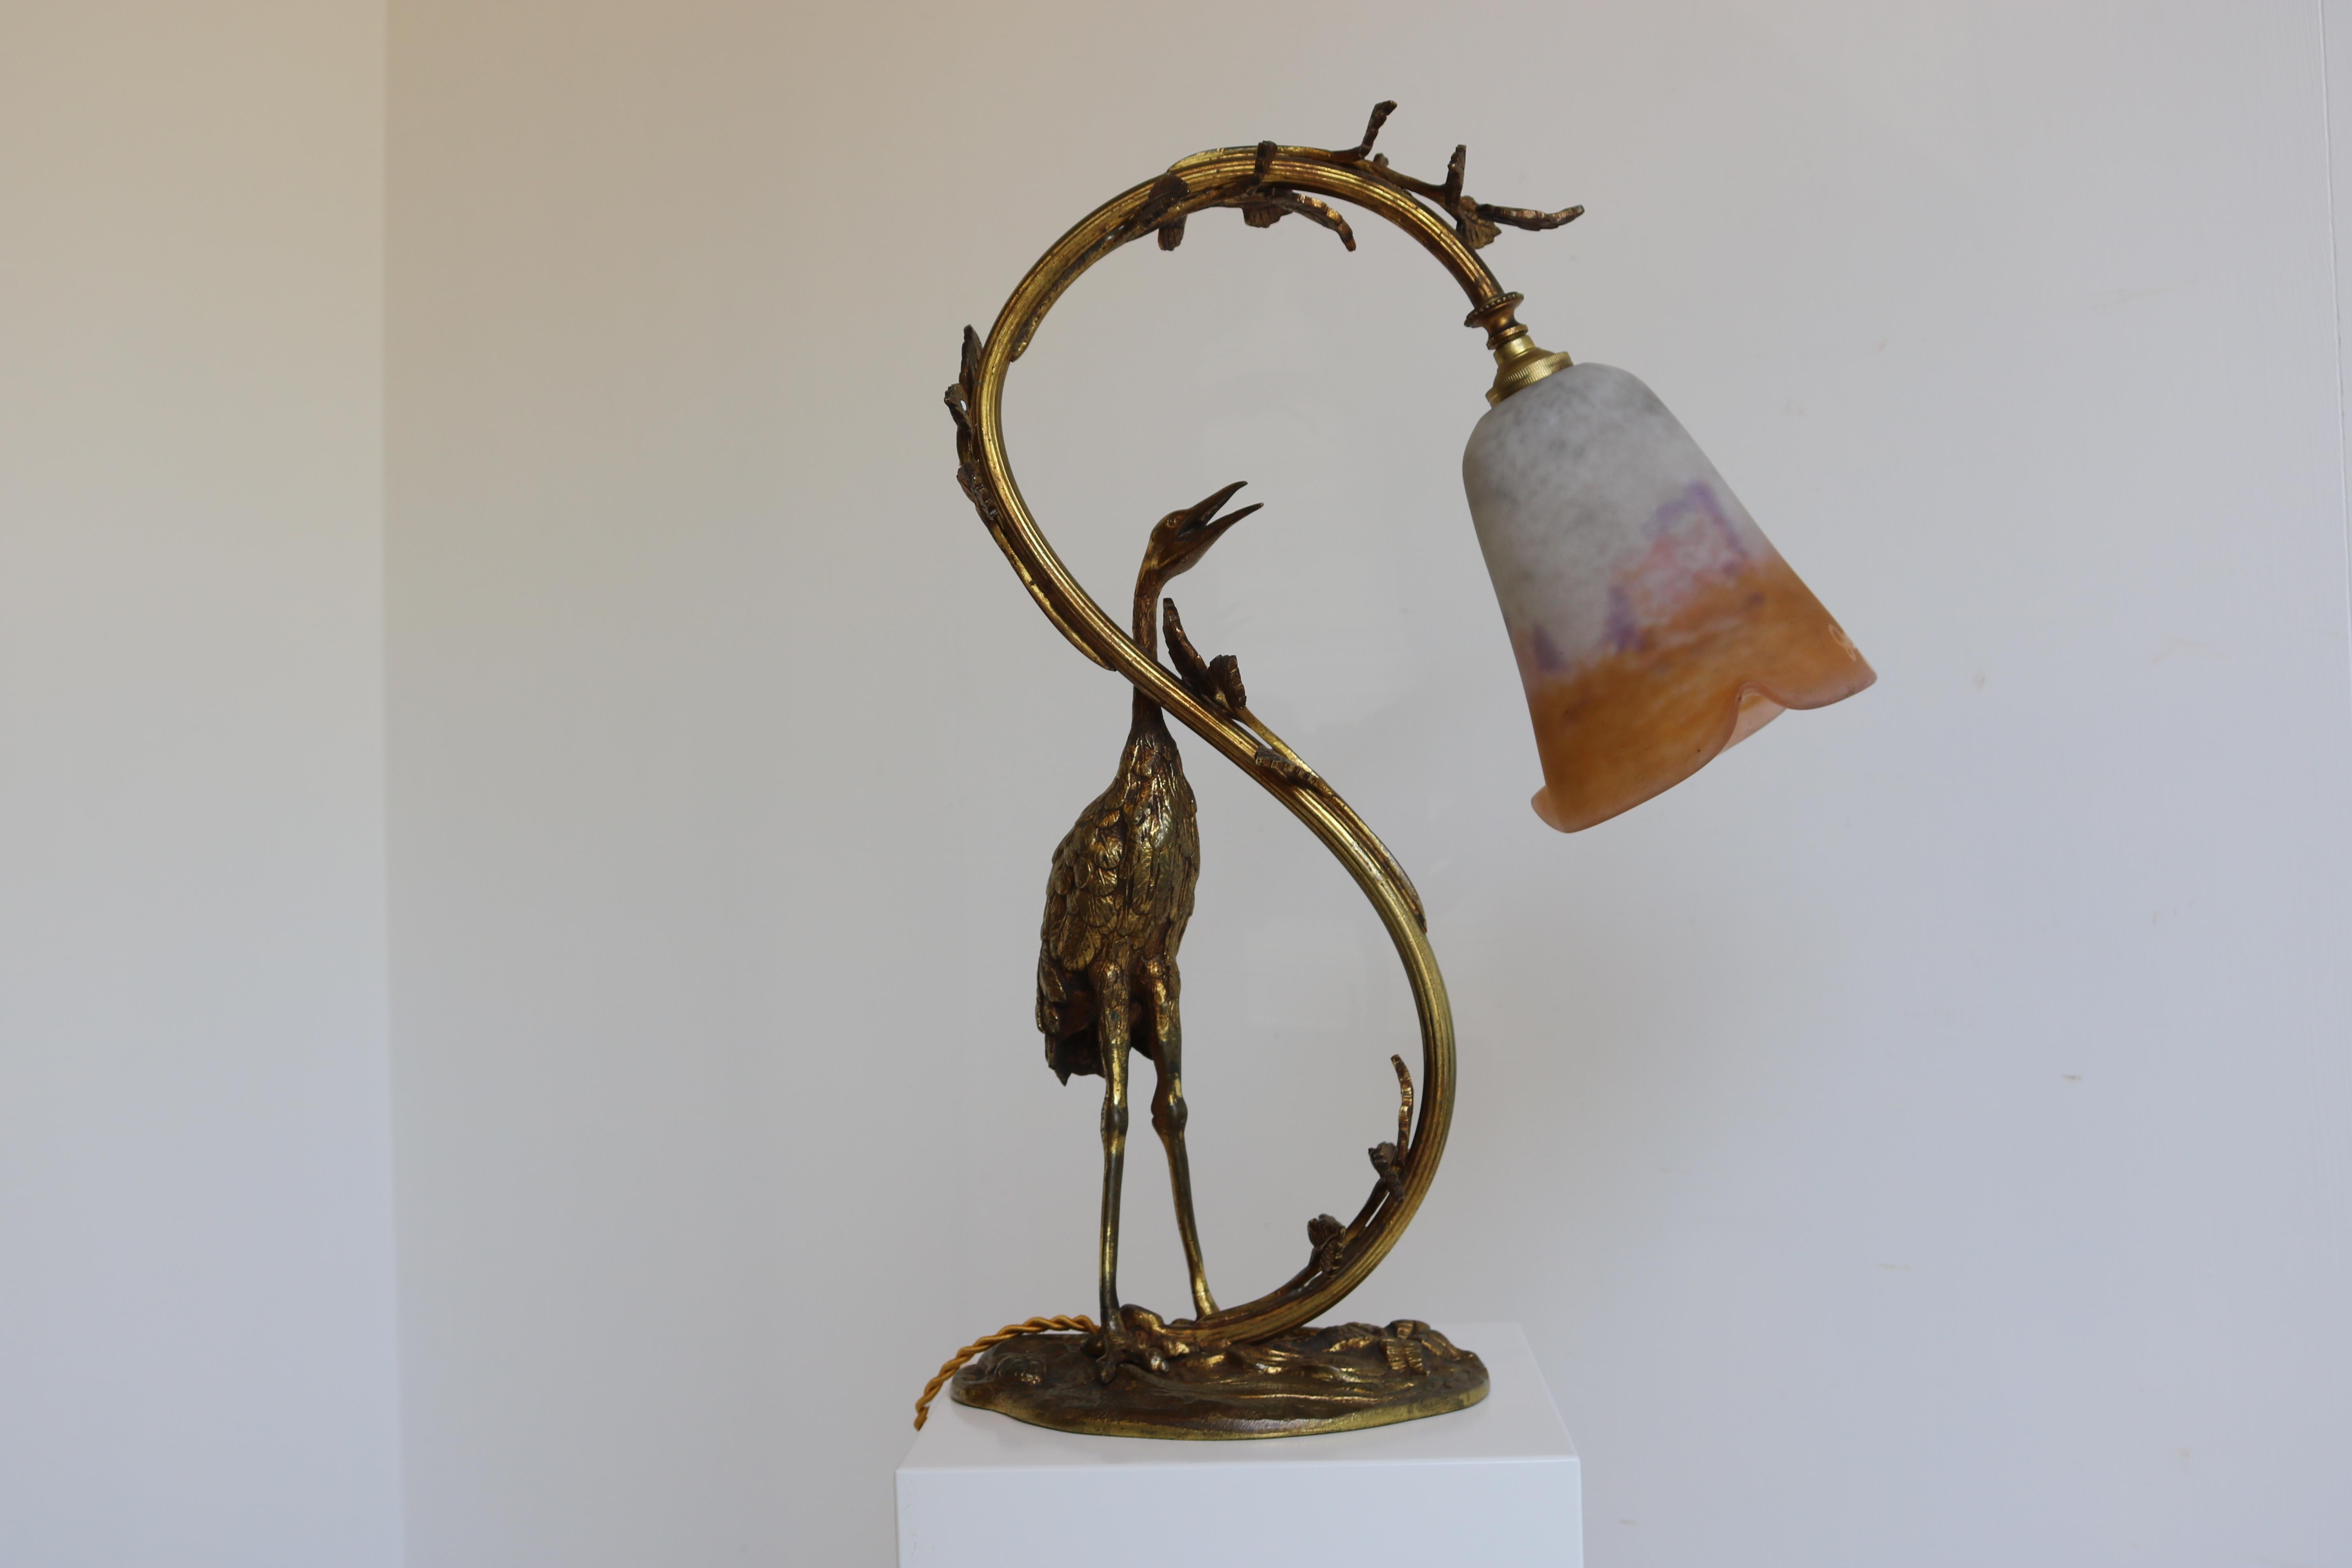 Antique French Art Nouveau Table Lamp Heron by Degue 1920 Pate De Verre Bronze  For Sale 1